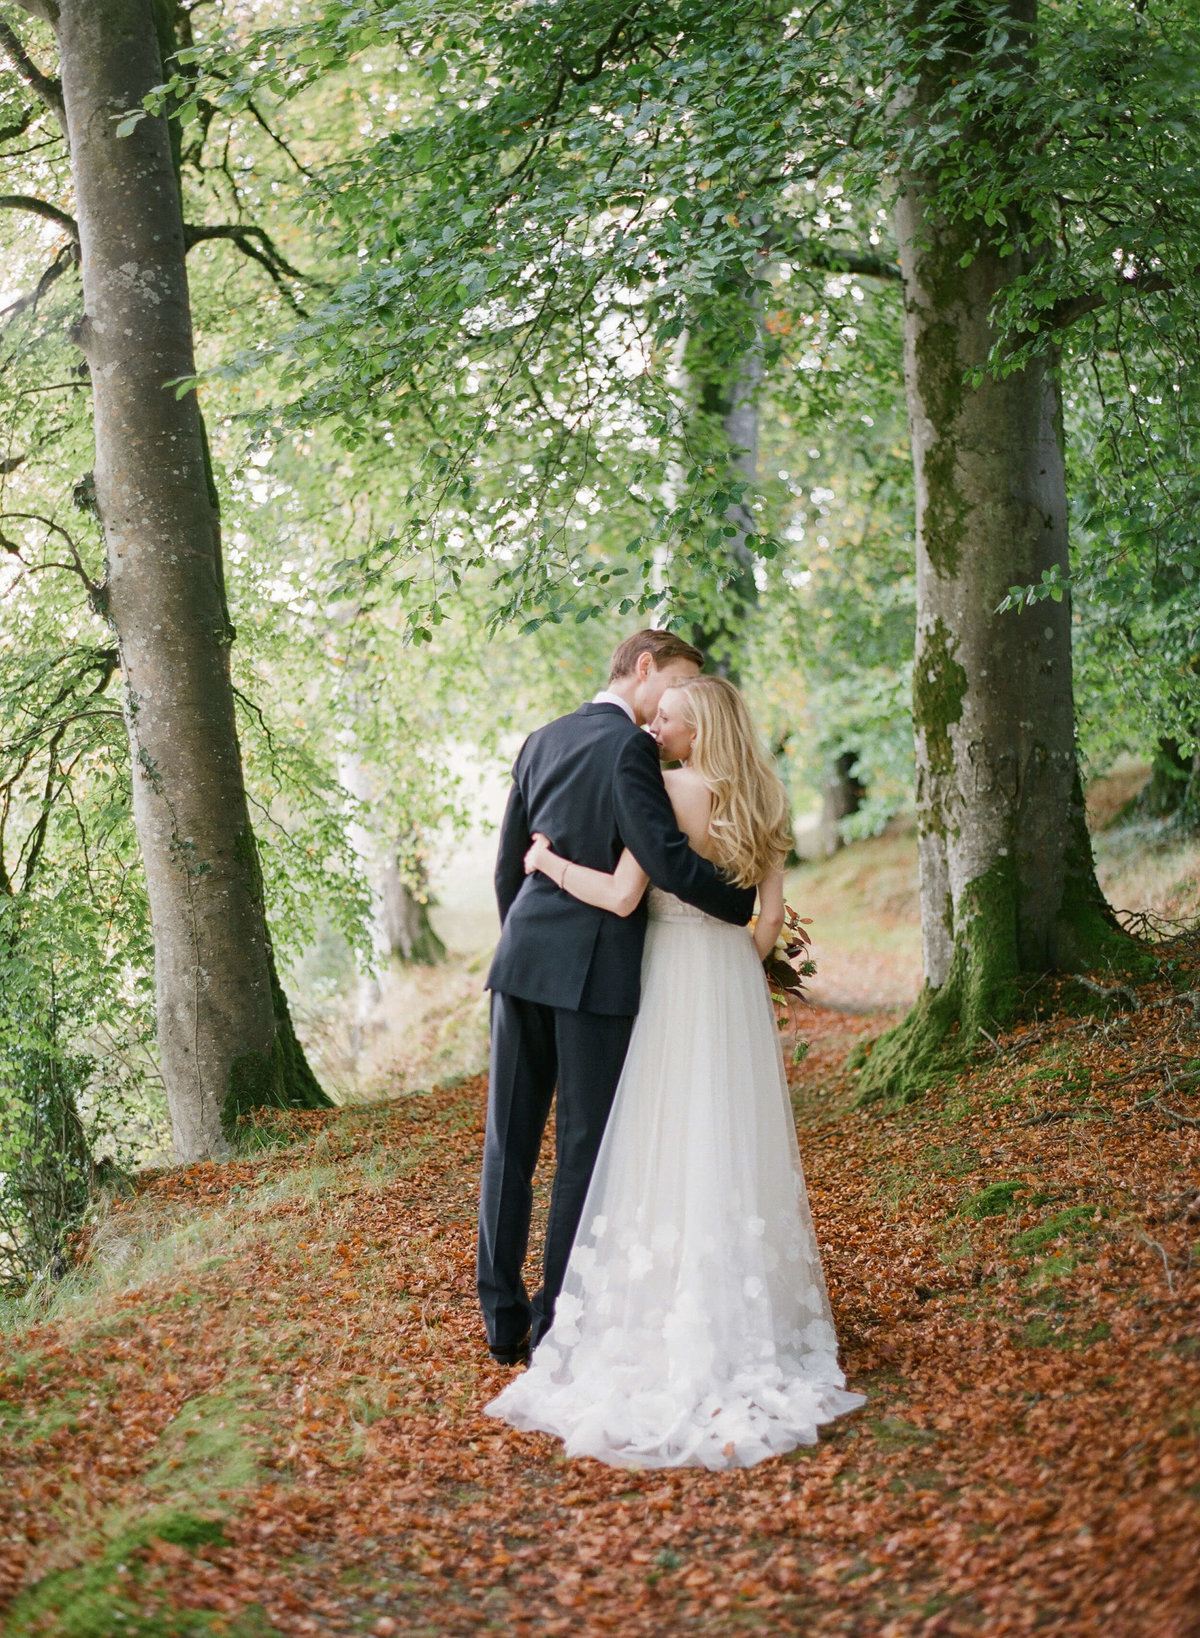 47-KTMerry-weddings-bride-groom-Ireland-woods